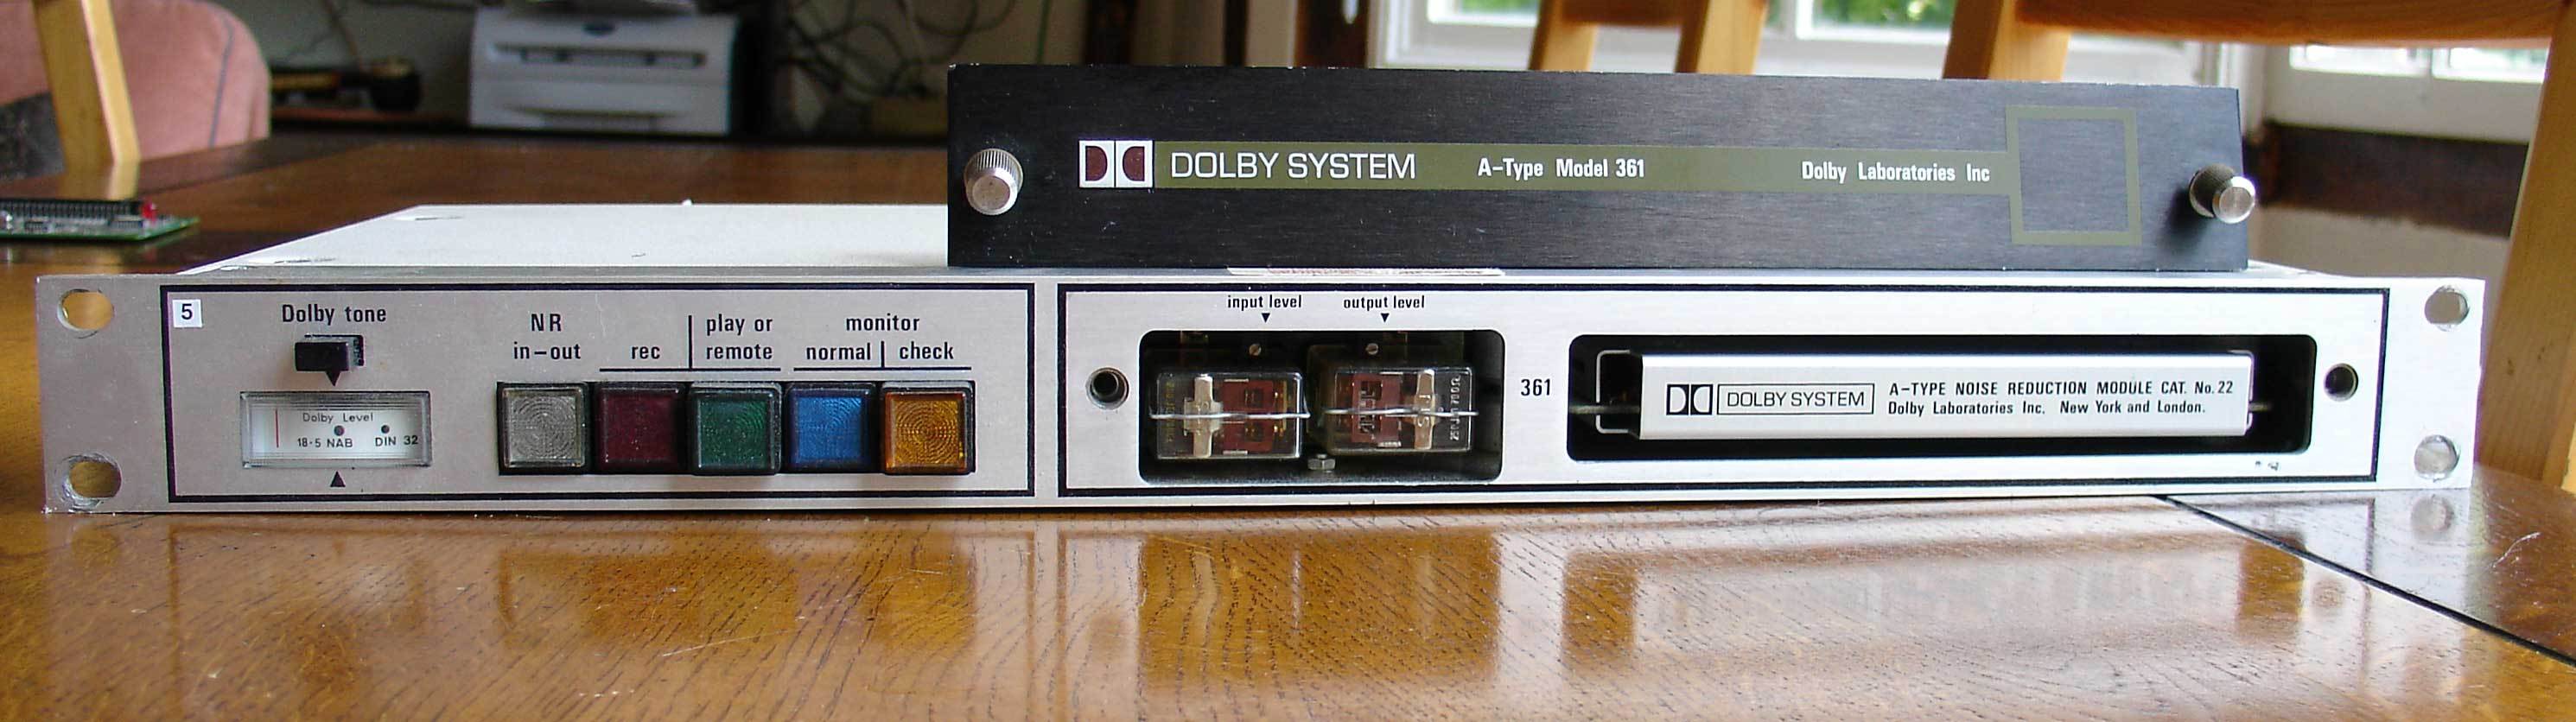 dolby-modele-361.jpg